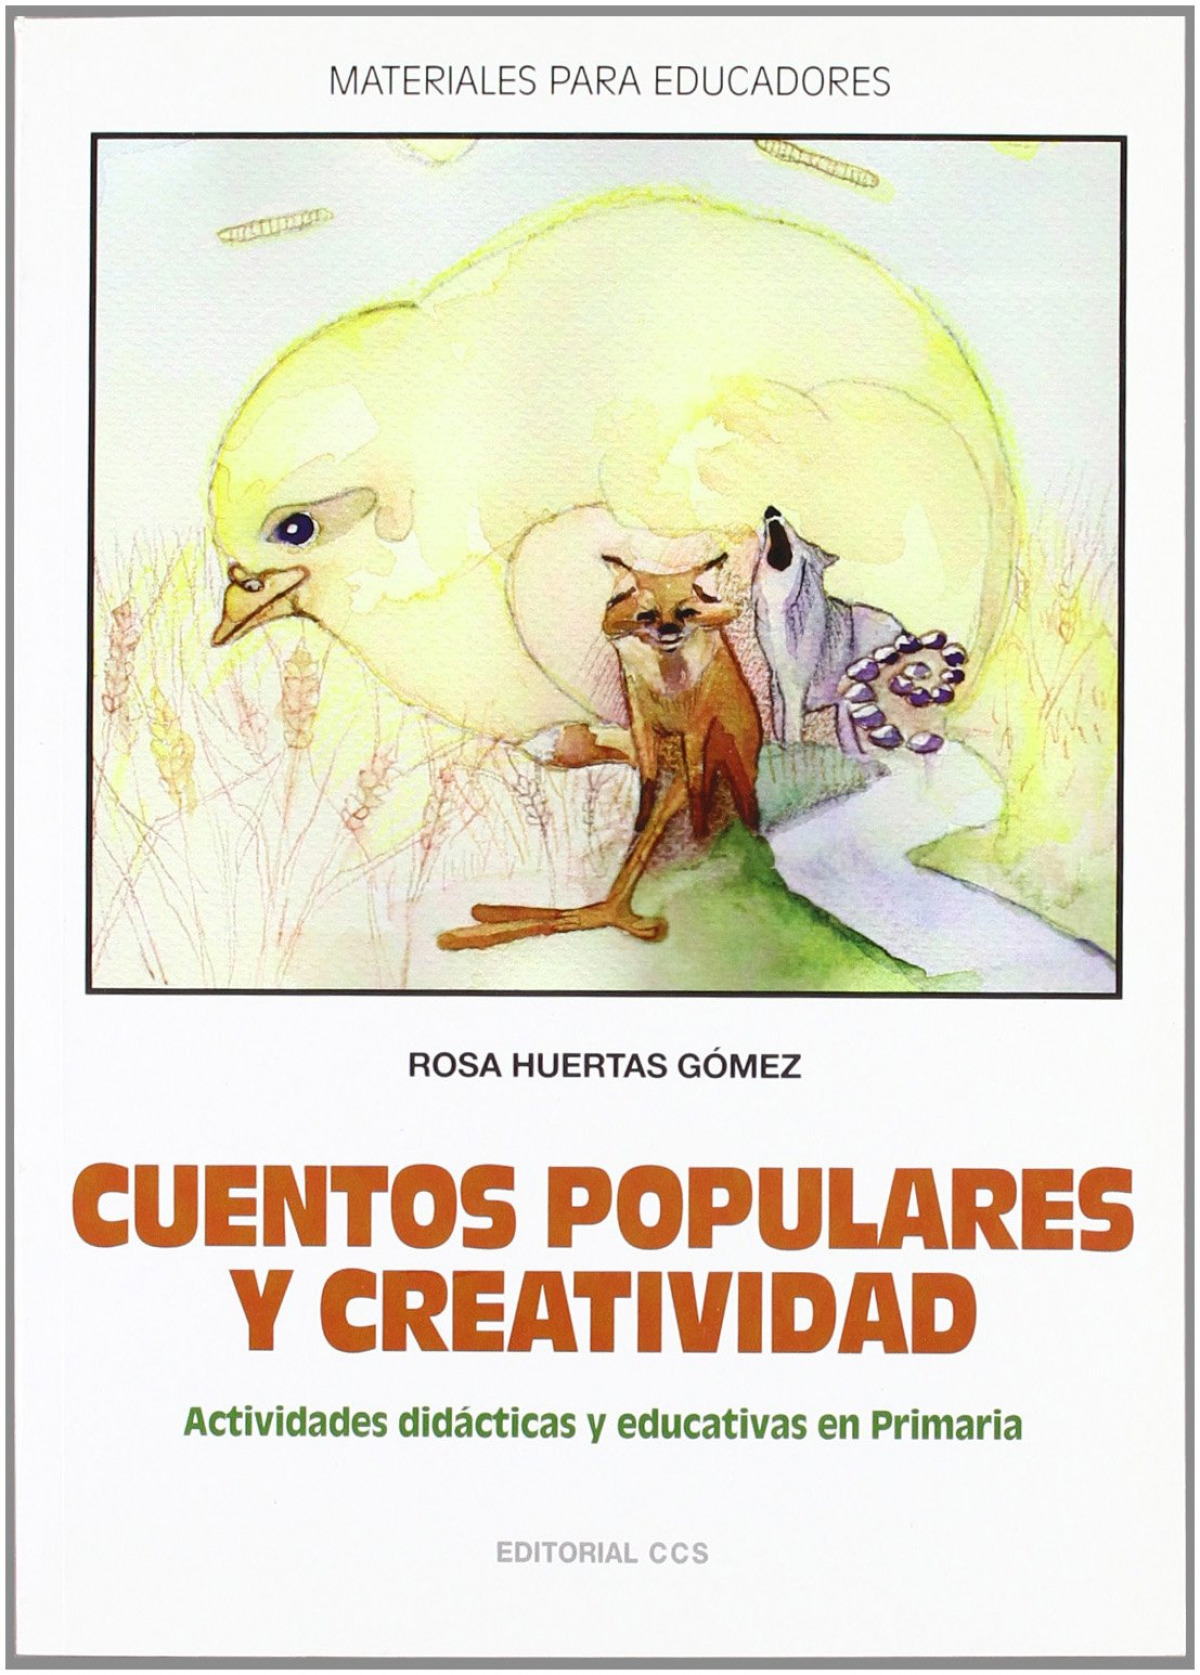 Cuentos populares y creatividad - Huertas Gomez, Rosa